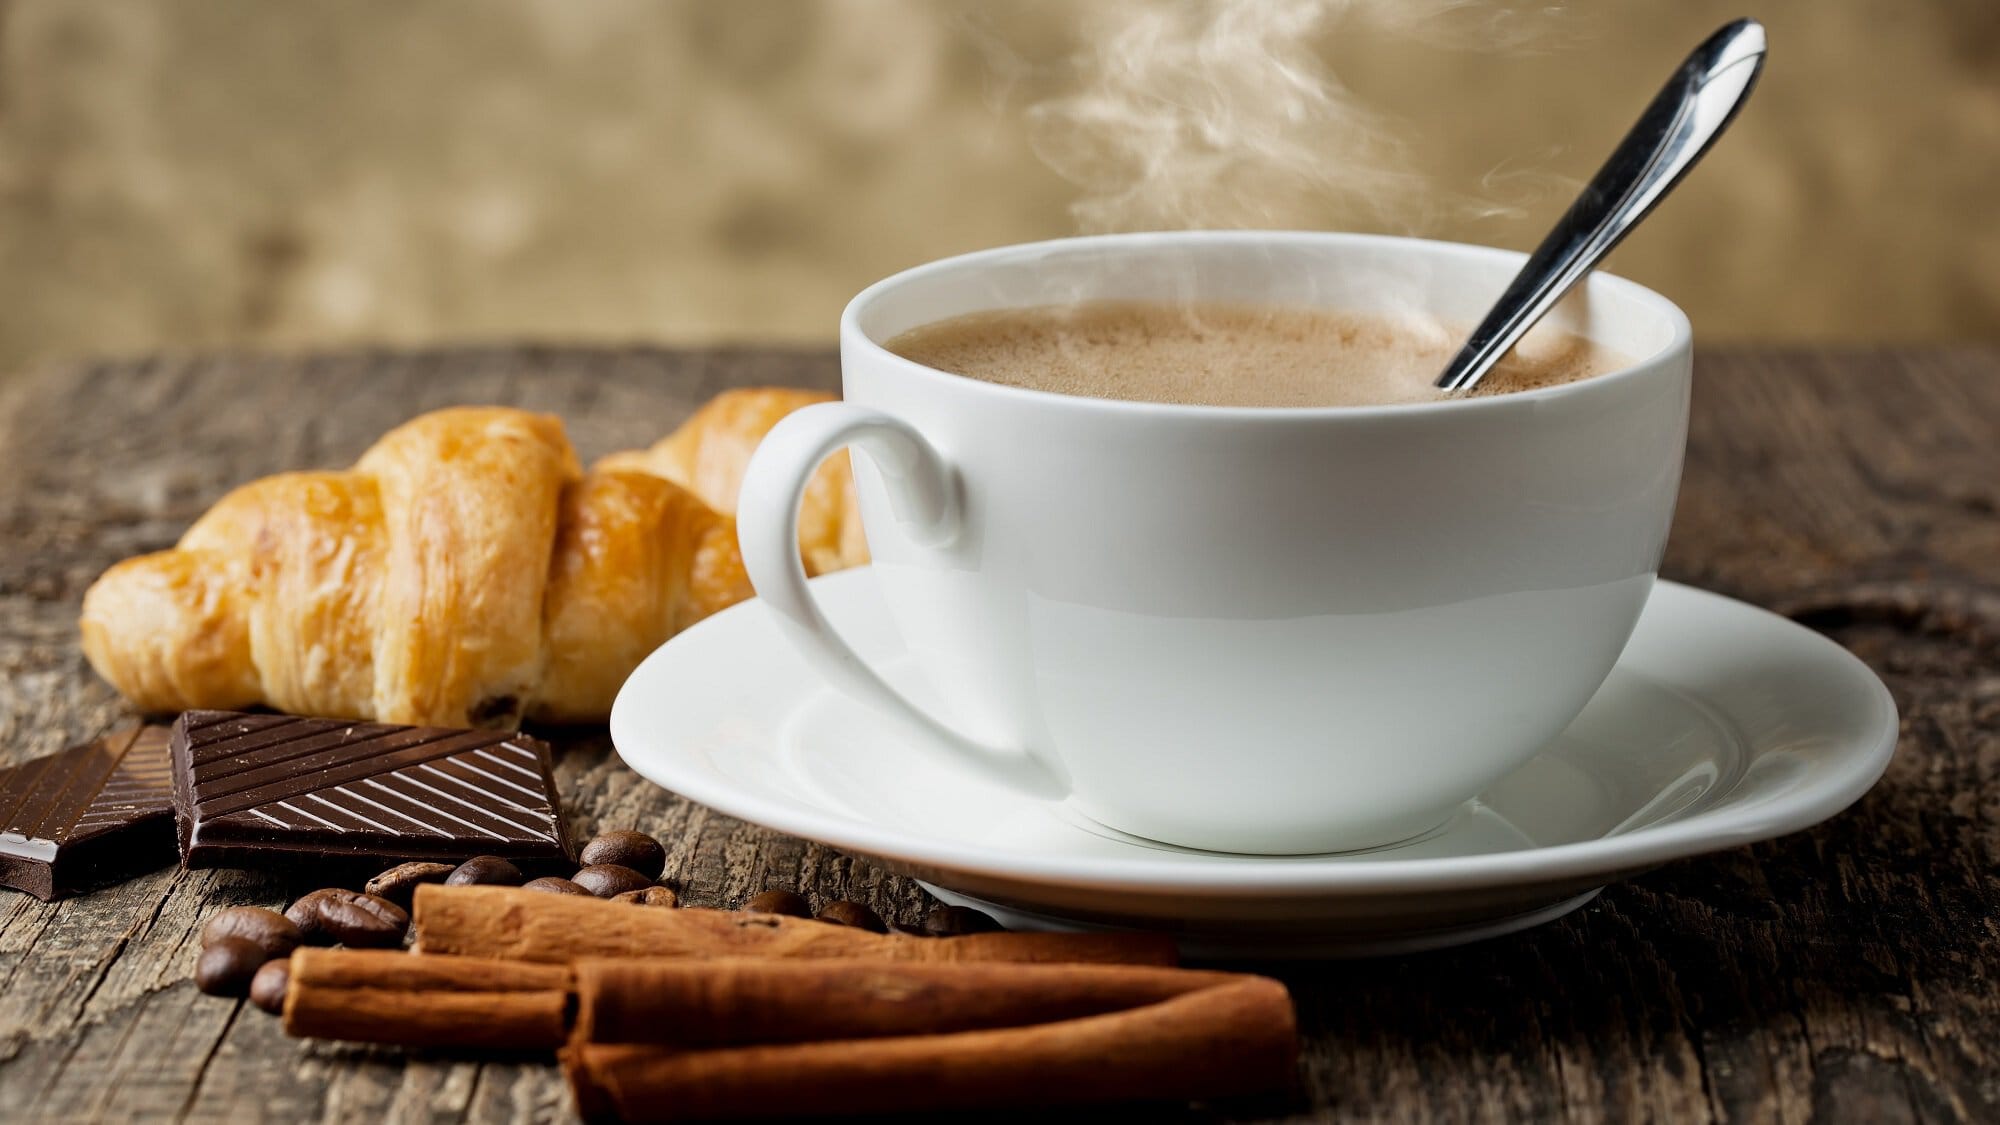 Frontalsicht: Ein Kaffee mit Vanille steht auf einem Holztisch. Daneben liegen Vanilleschoten und ein Croissant.